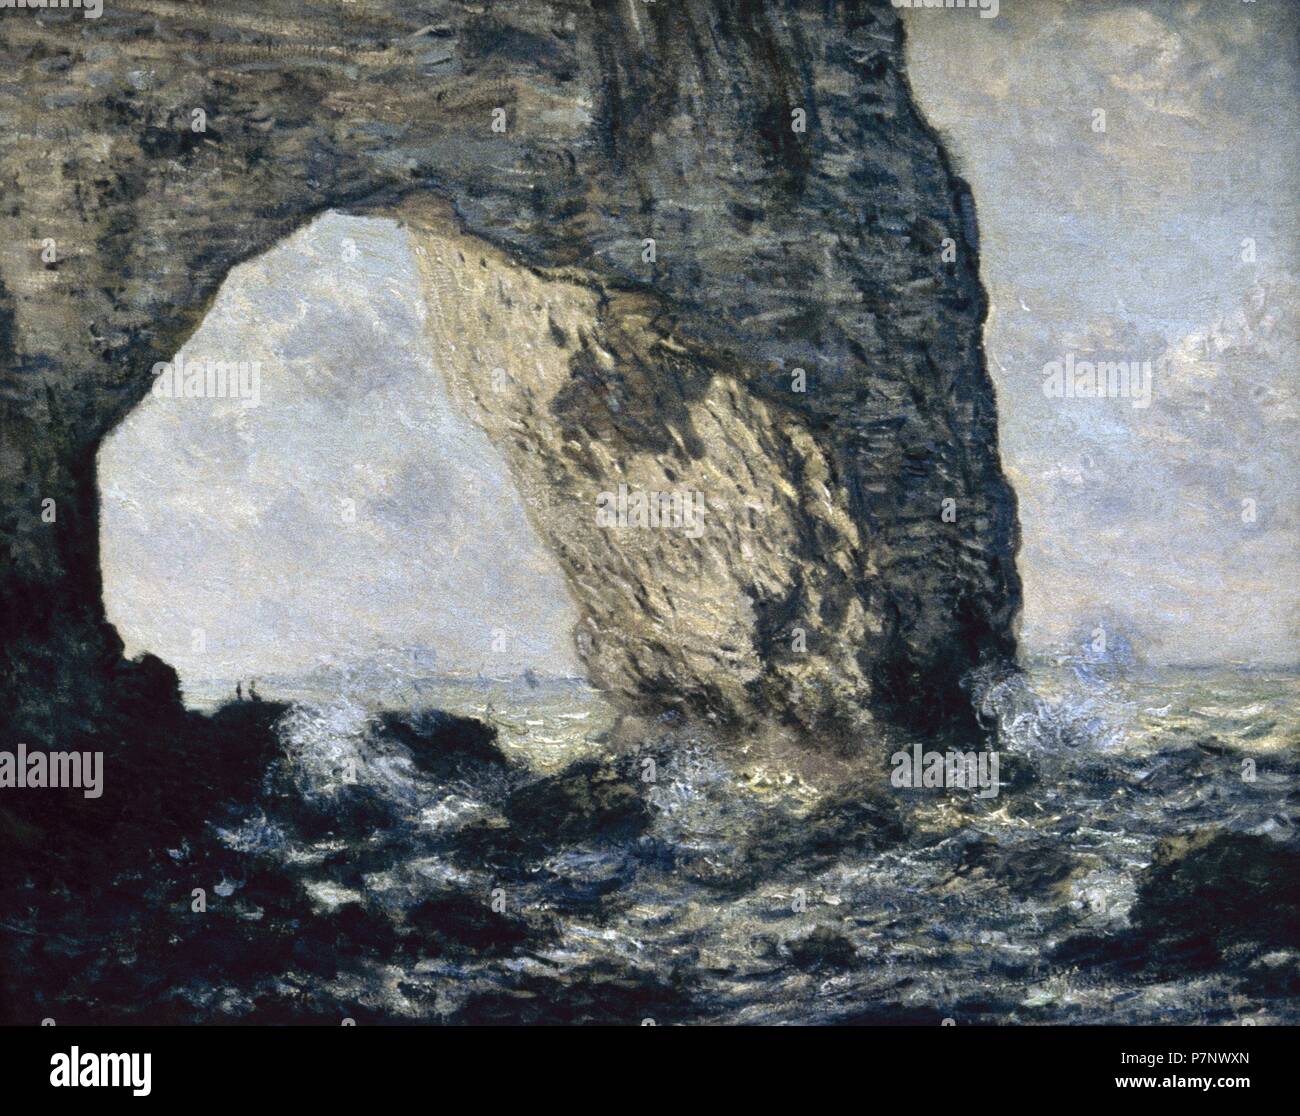 Claude Monet (1906-1957). Le peintre français. L'impressionnisme. La Manneporte Etretat (1883). Huile sur toile. Côte normande. Metropolitan Museum of Art de New York. United States. Banque D'Images